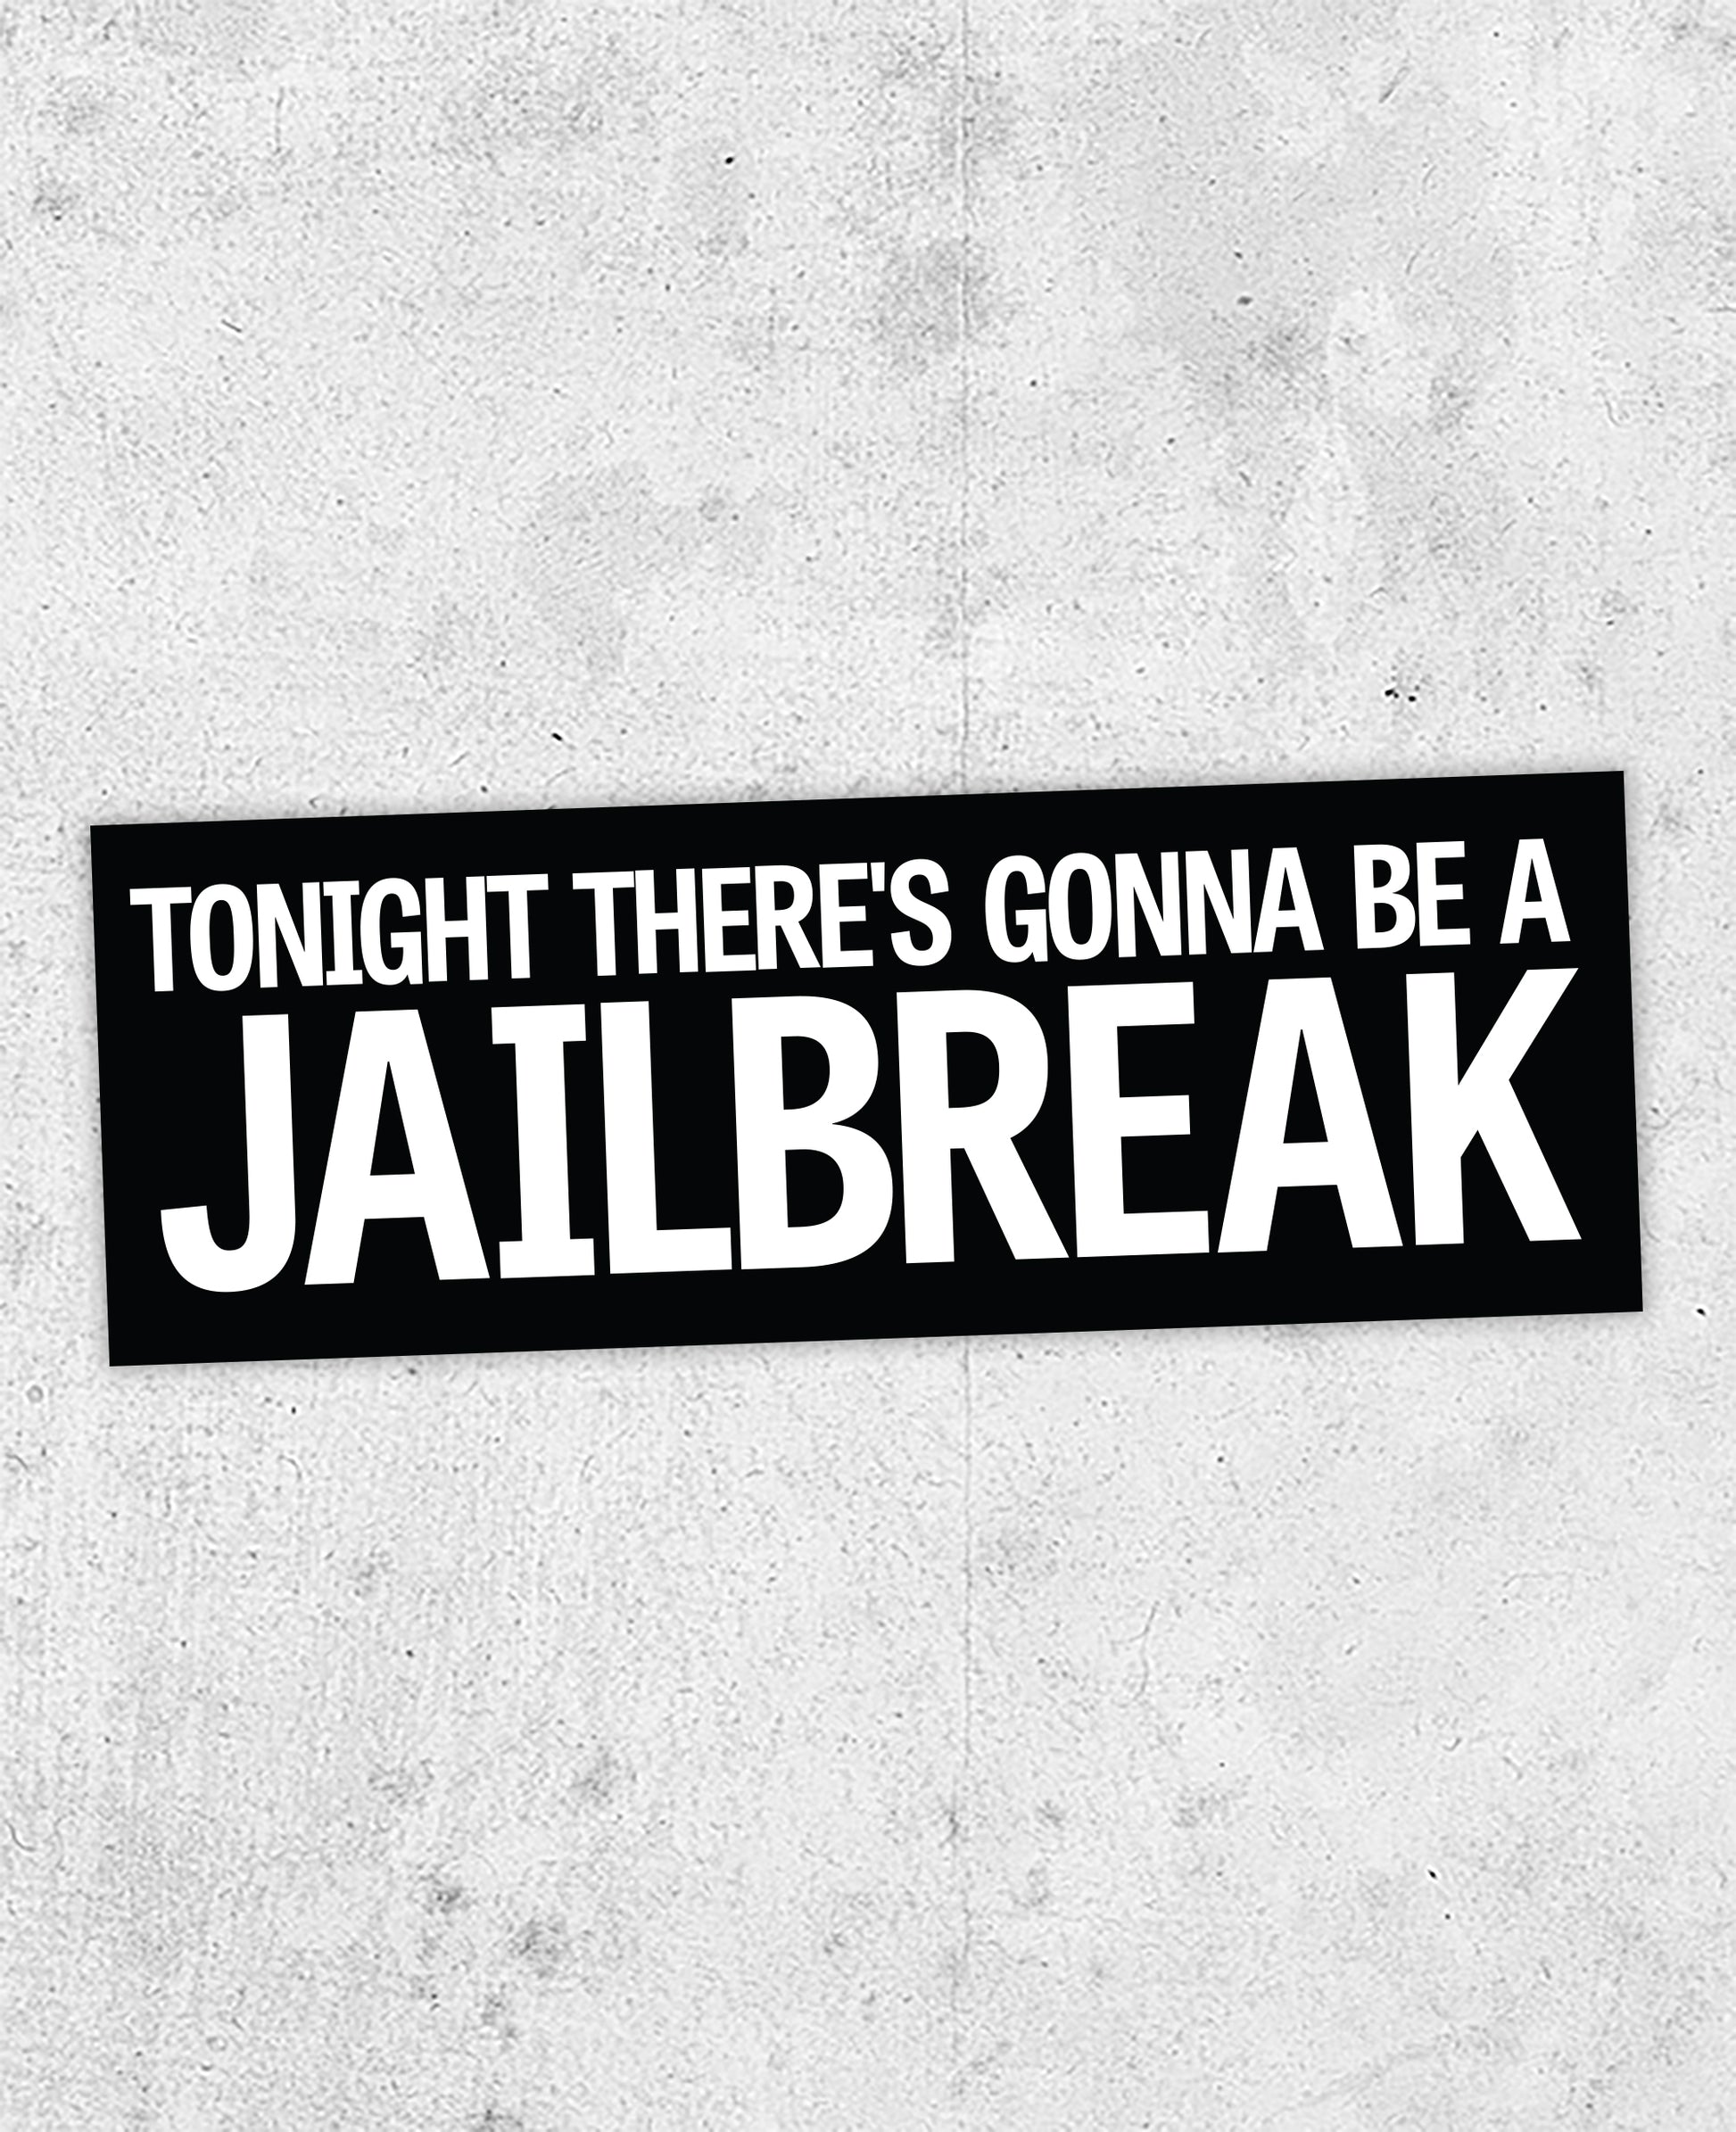 Thin Lizzy "Jailbreak" Lyric Sticker